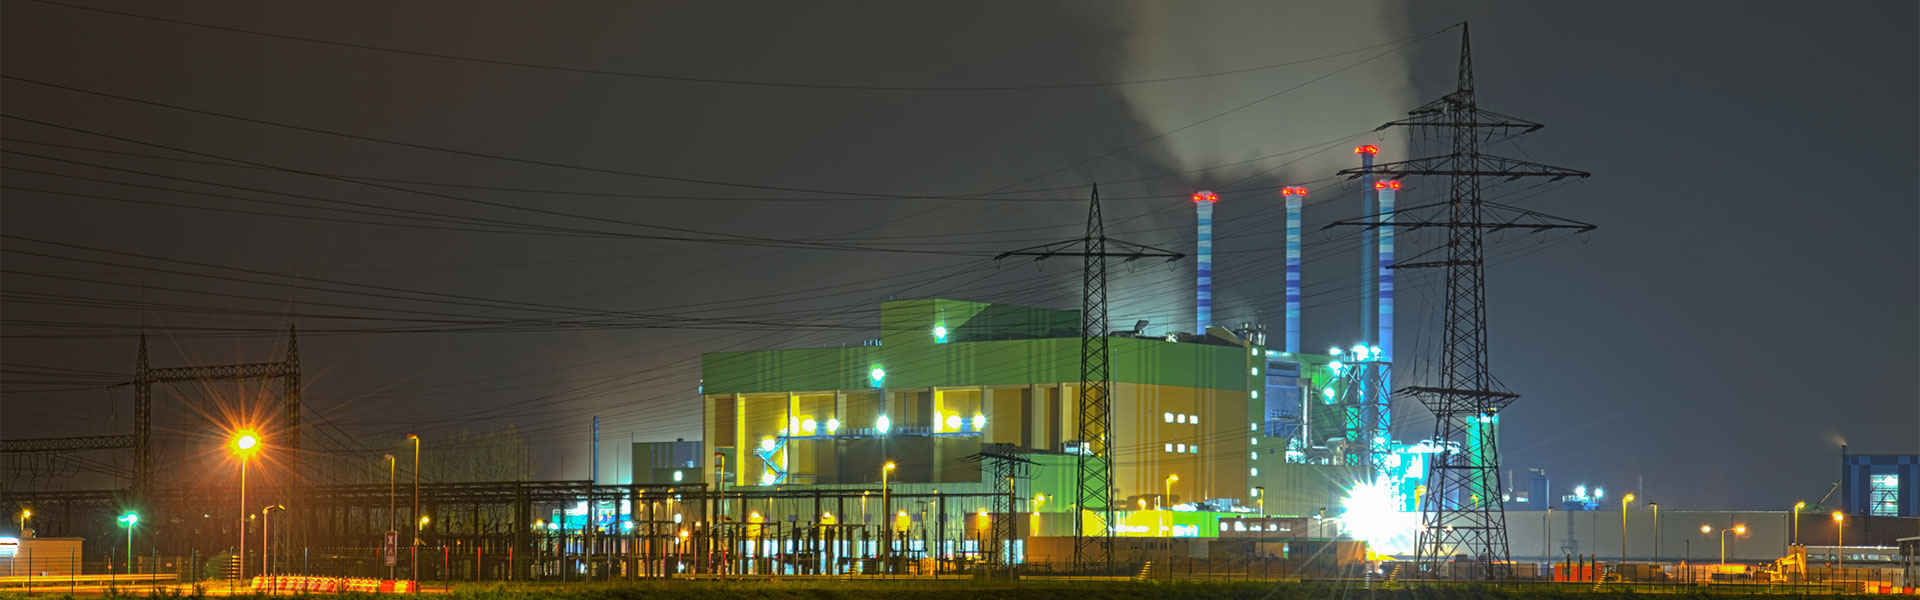 Energy plant